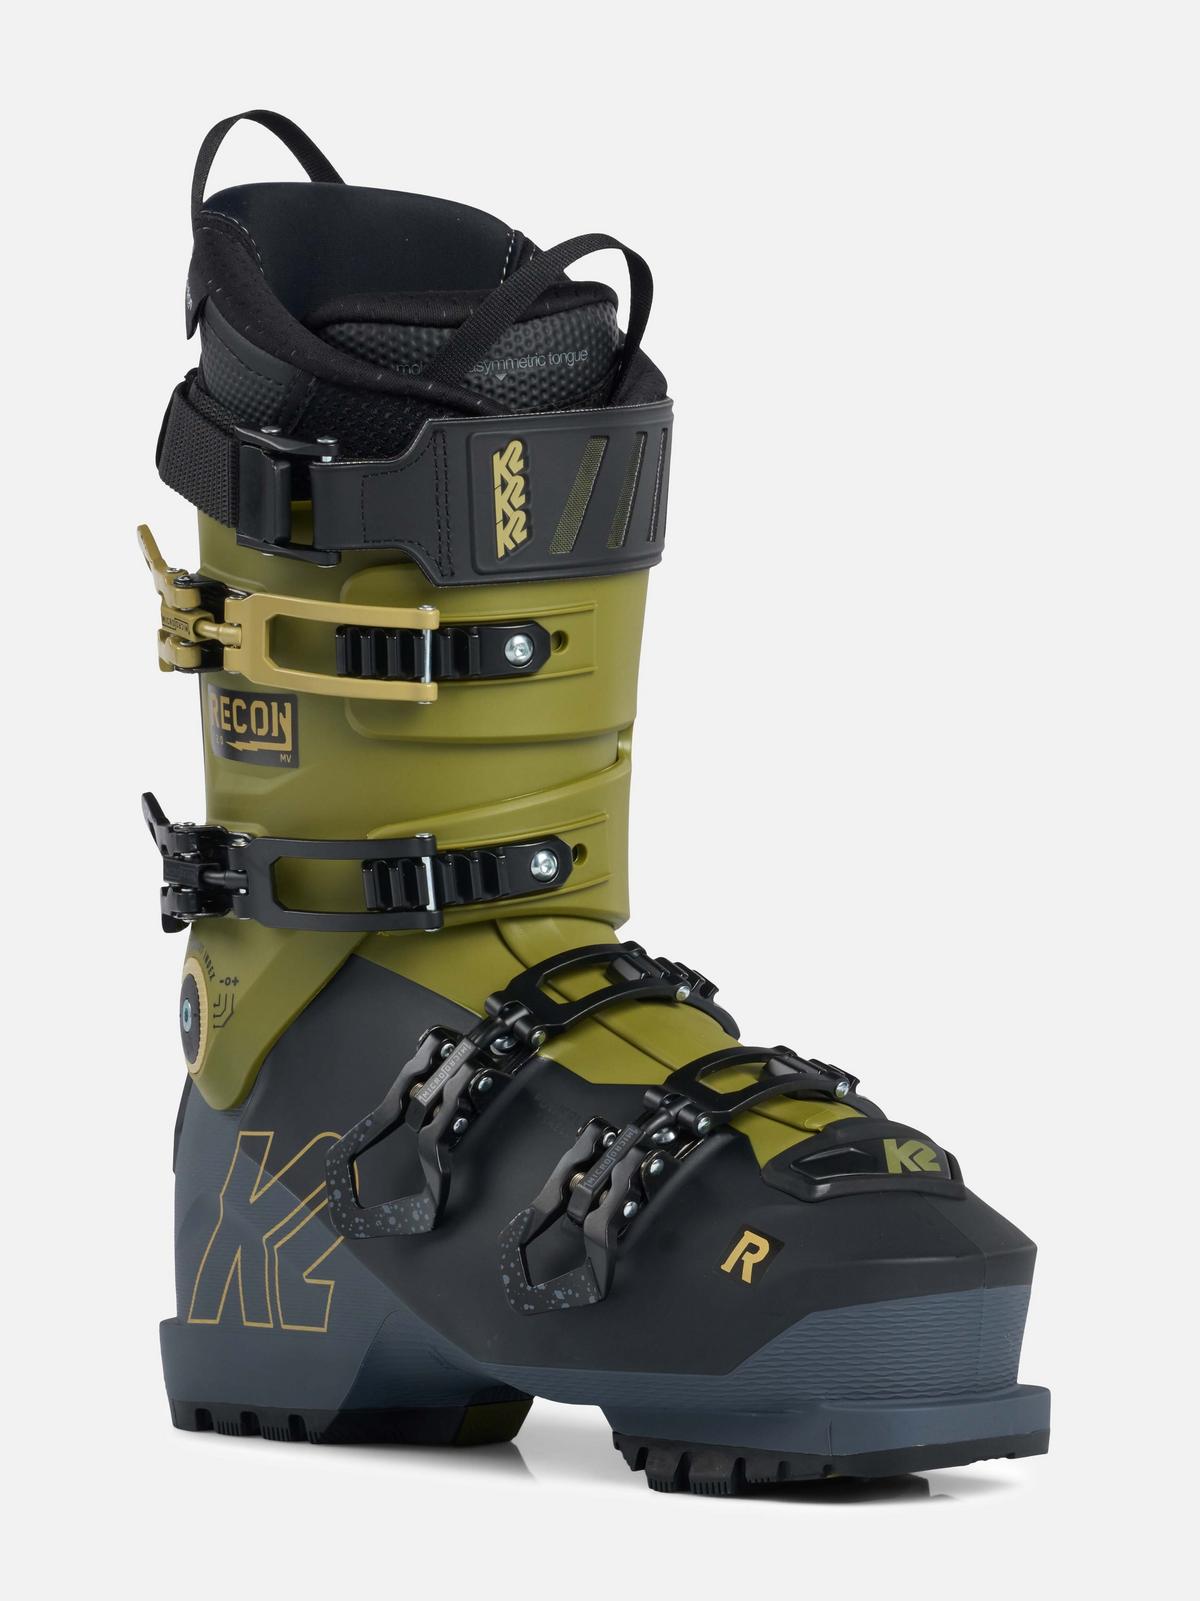 Recon 120 Ski Boots